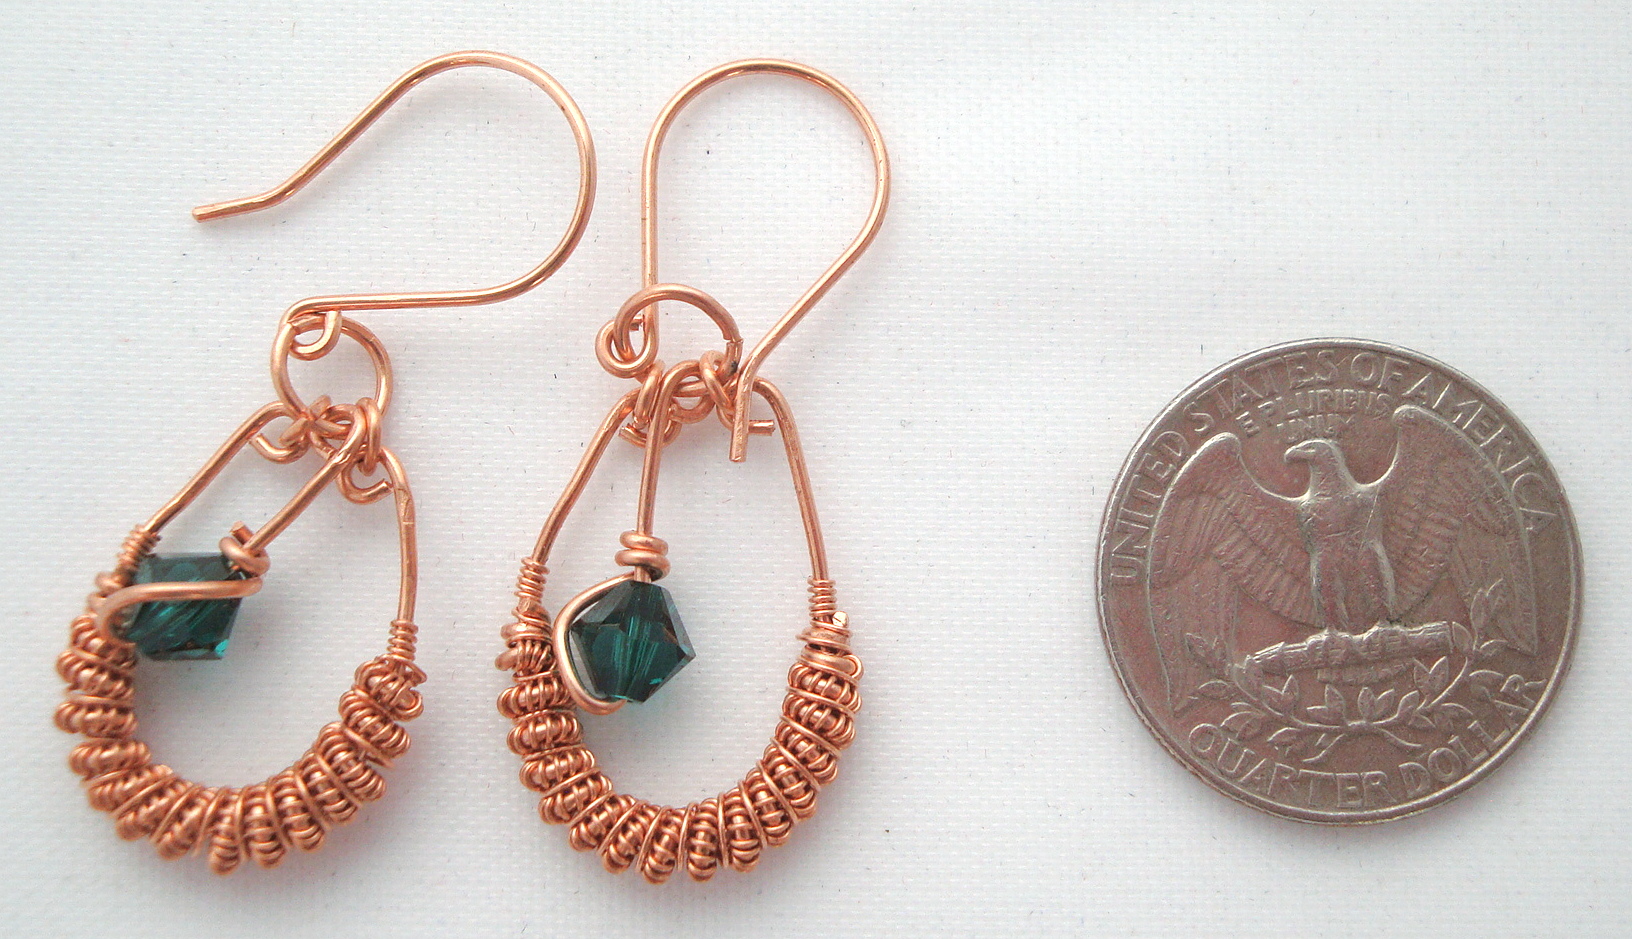 Copper Spiral earrings